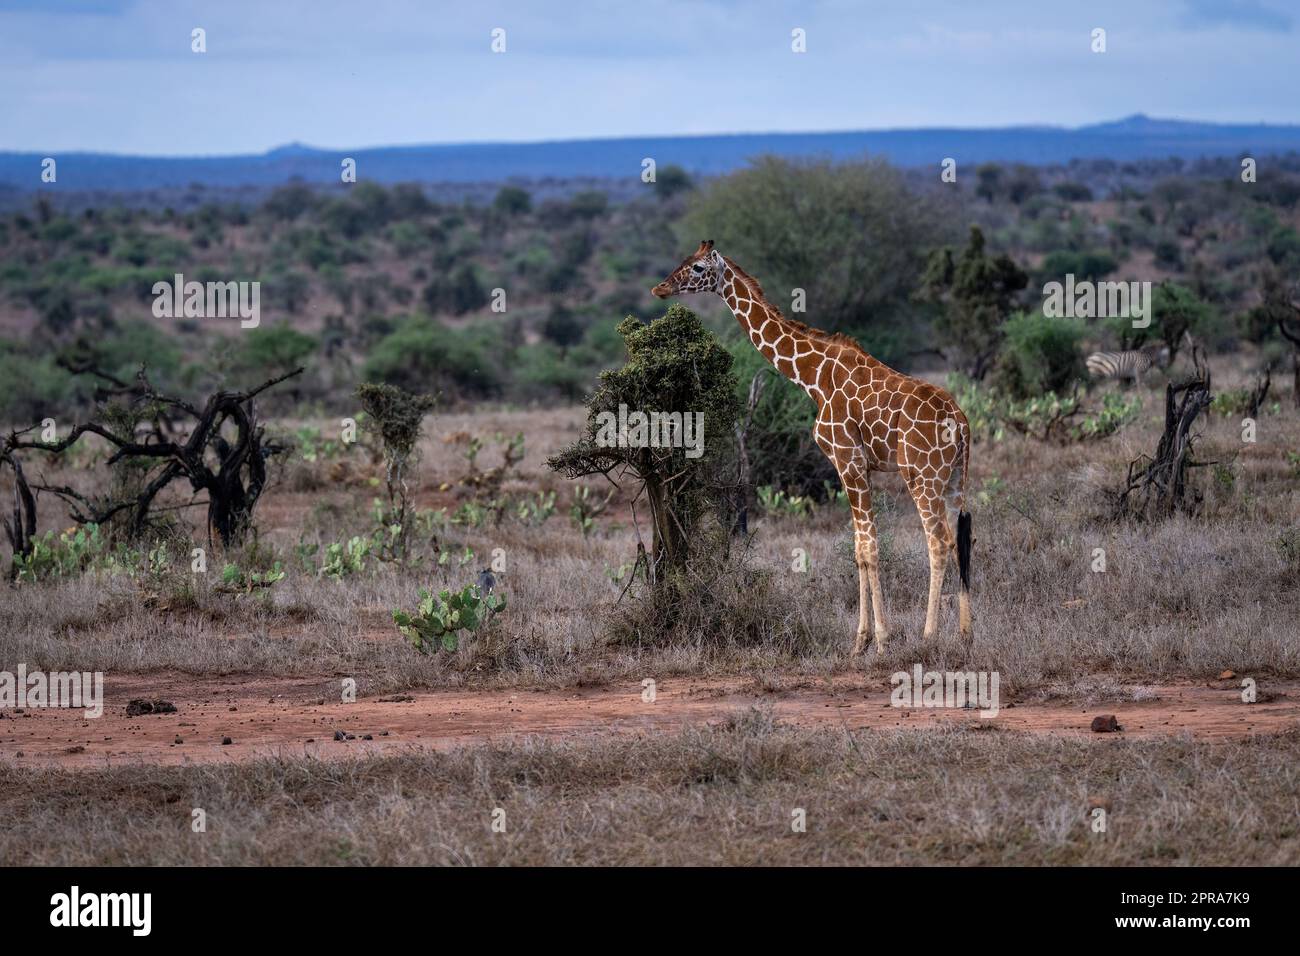 La girafe réticulée se dresse en buisson sur la savane Banque D'Images